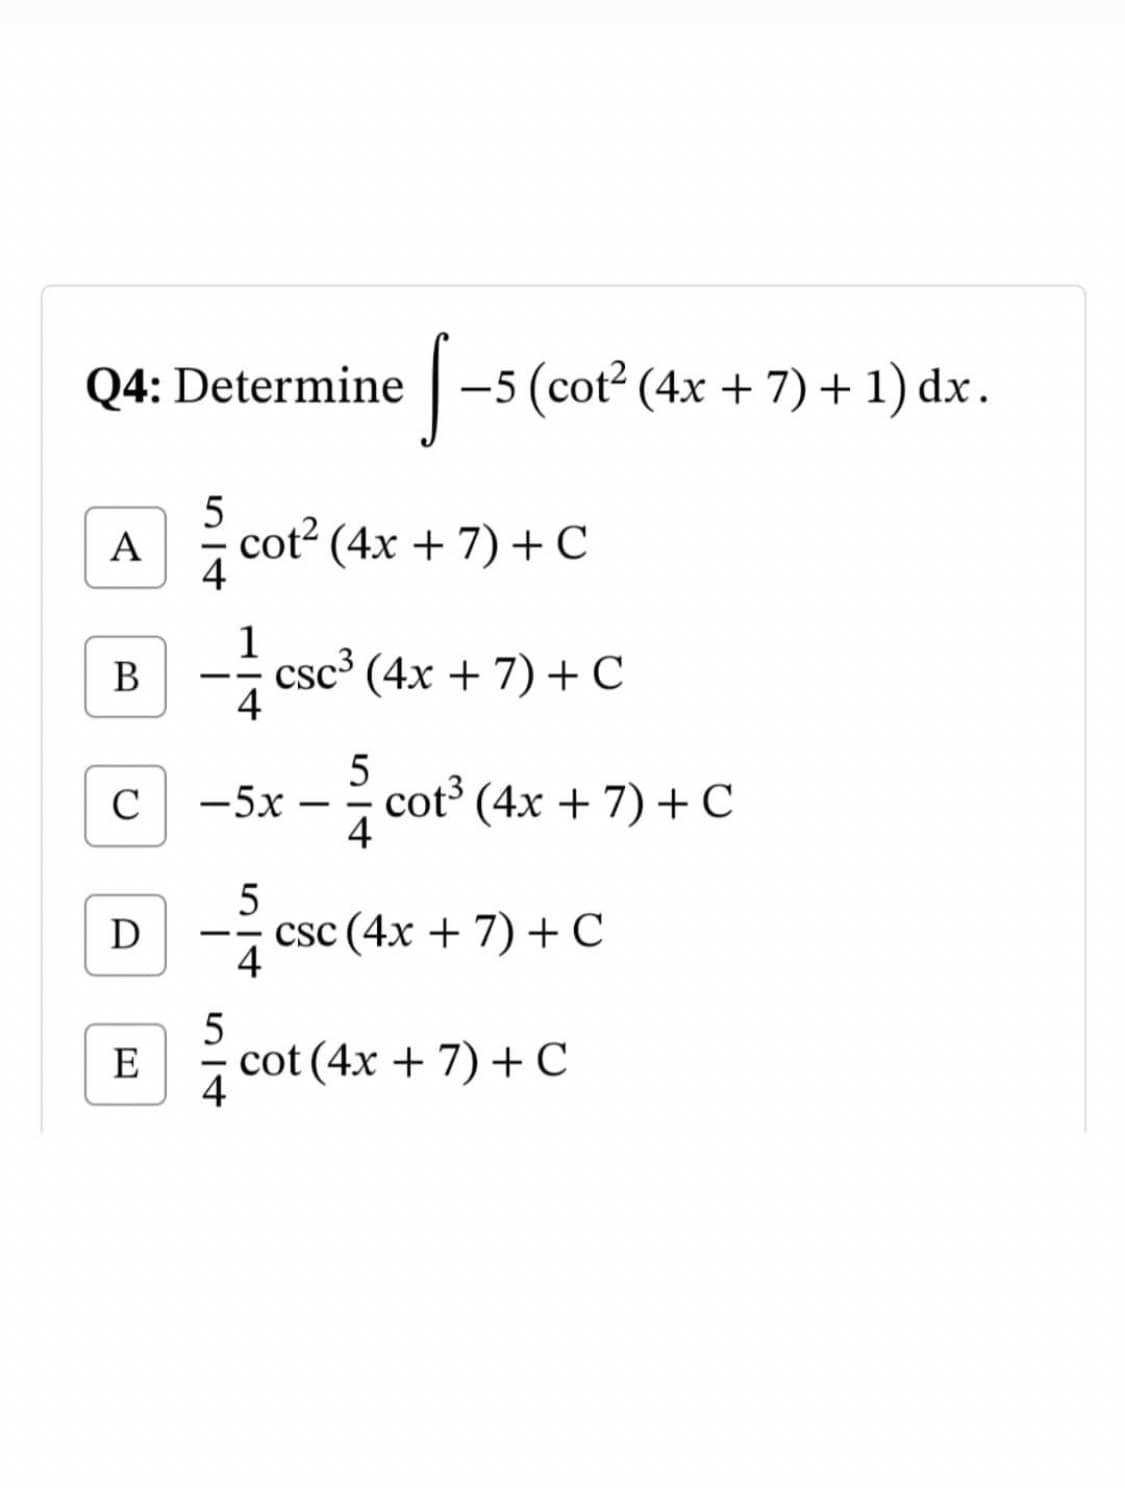 Q4: Determine
-5 (cot? (4x + 7) +1) dx.
5
A
cot2 (4x + 7) +C
4
1
csc³ (4x + 7) +C
4
В
--
5
cot³ (4x + 7) + C
4
C
-5x
5
csc (4x + 7) + C
4
E
cot (4x + 7) + C
